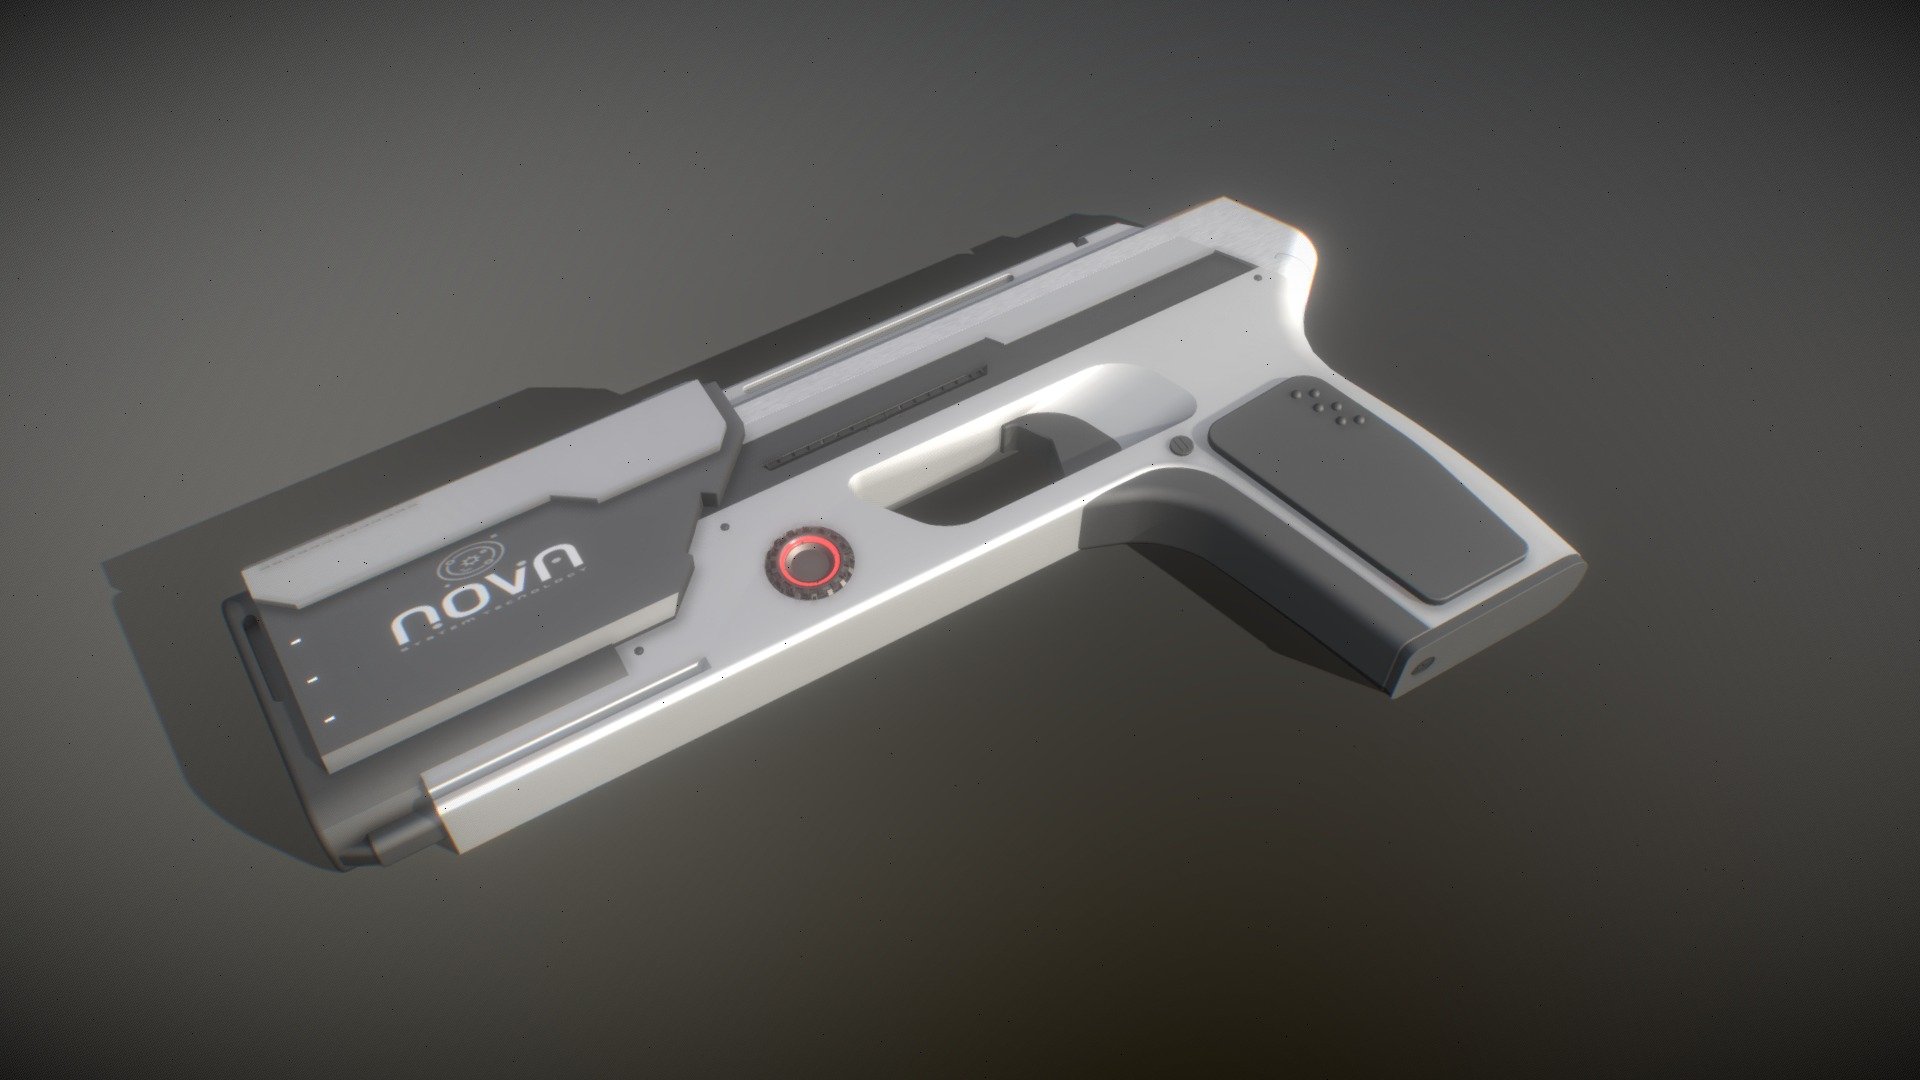 The 3D model of the &ldquo;Nova